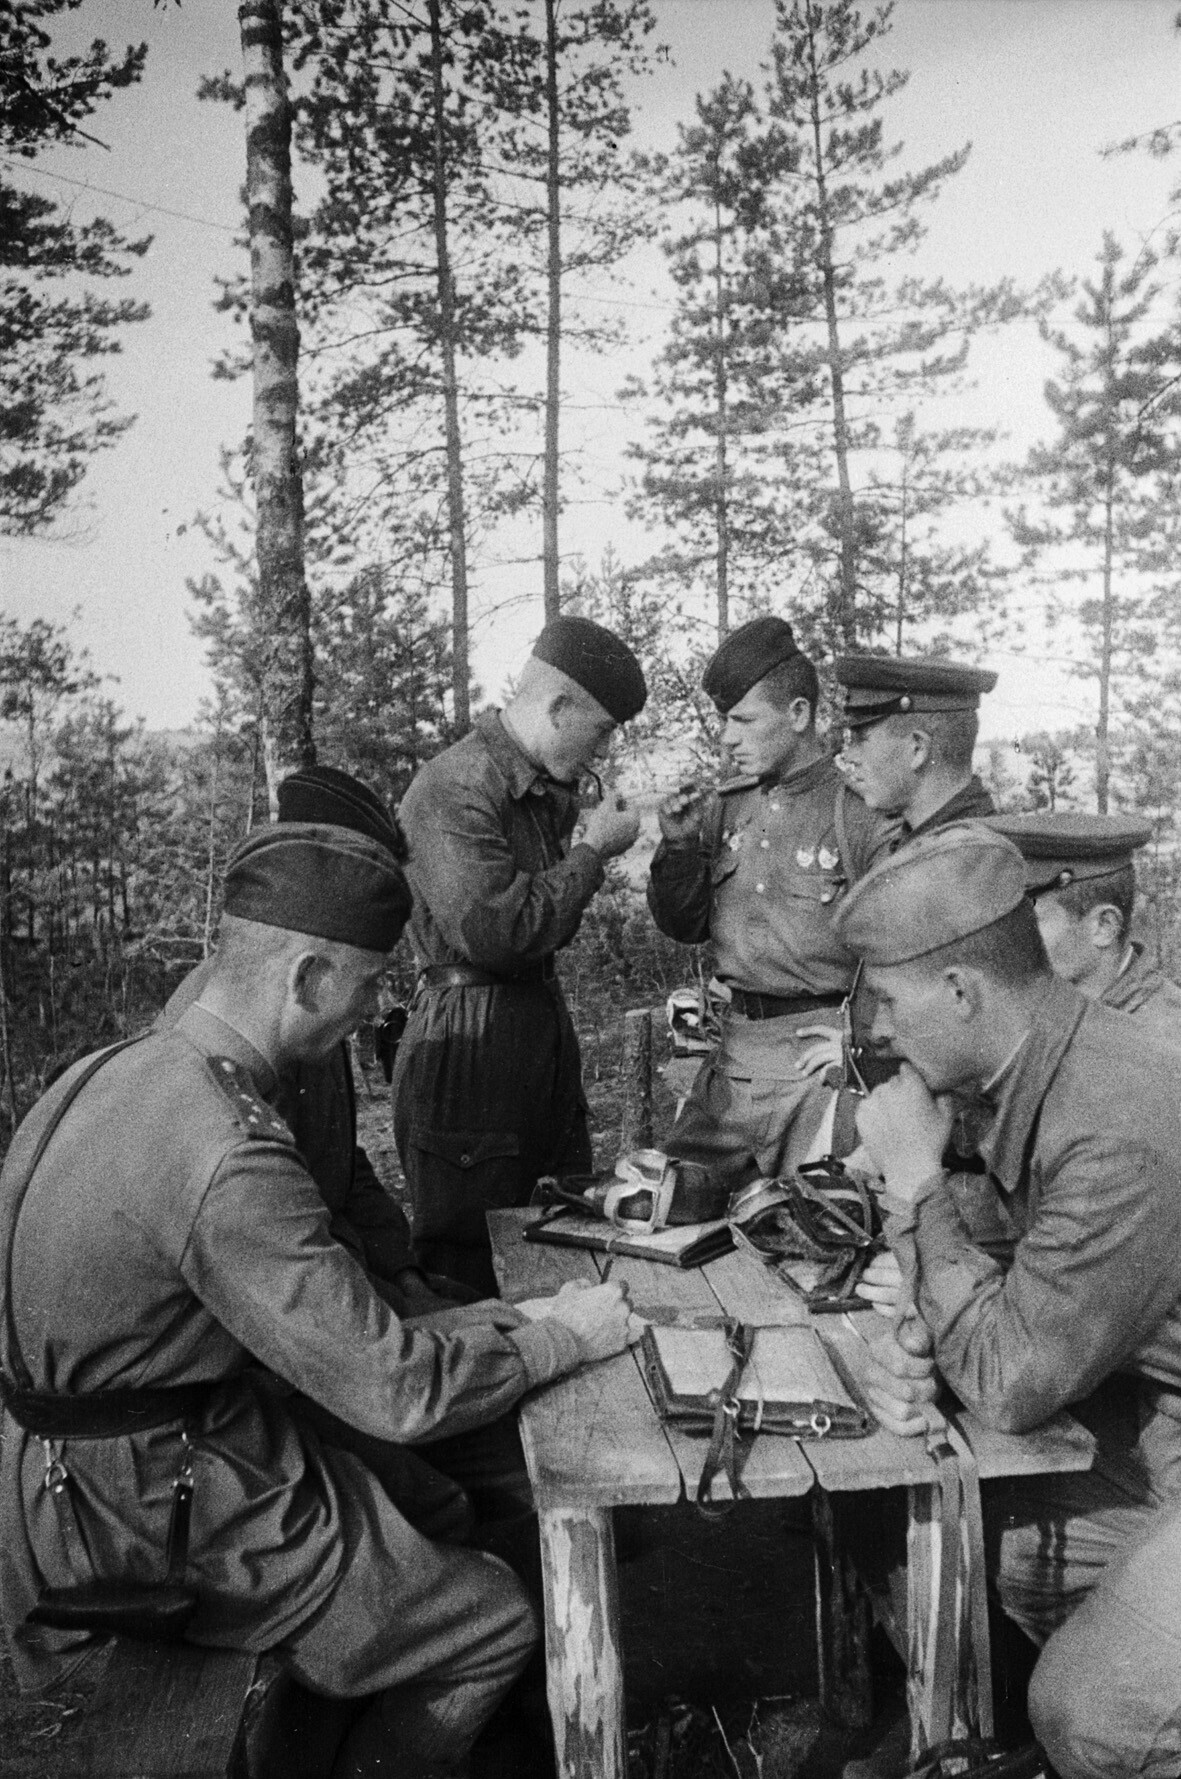 Fotografie: Befehlsausgabe an die Besatzung einer Fliegerstaffel, Kalininer Front, 3. August 1943 (Museum Berlin-Karlshorst RR-P)